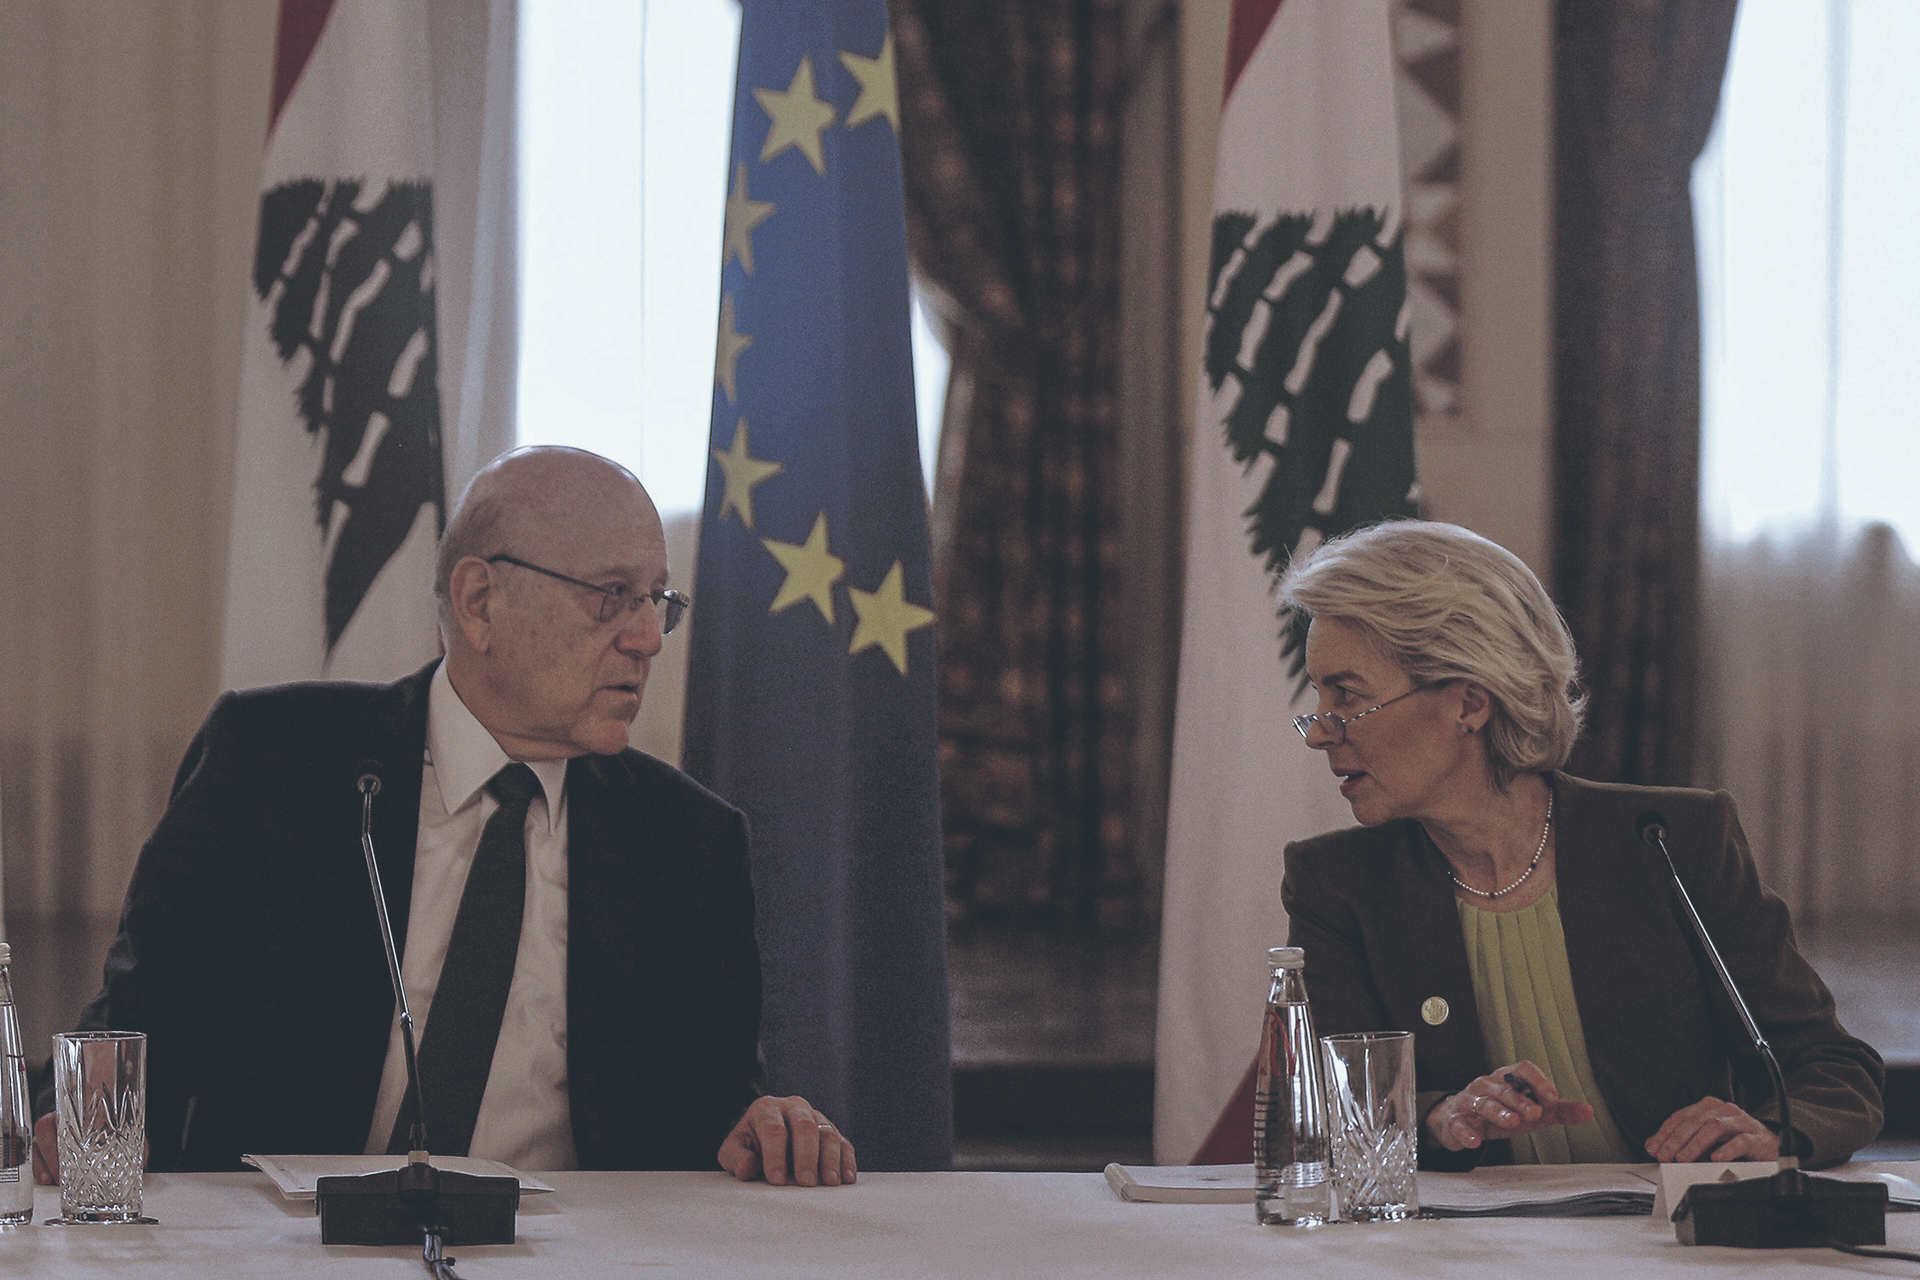 Am 2. Mai im Regierungssitz des libanesischen Ministerpräsidenten: Der Hausherr, Najib Mikati, und die EU-Kommissionspräsidentin Ursula von der Leyen